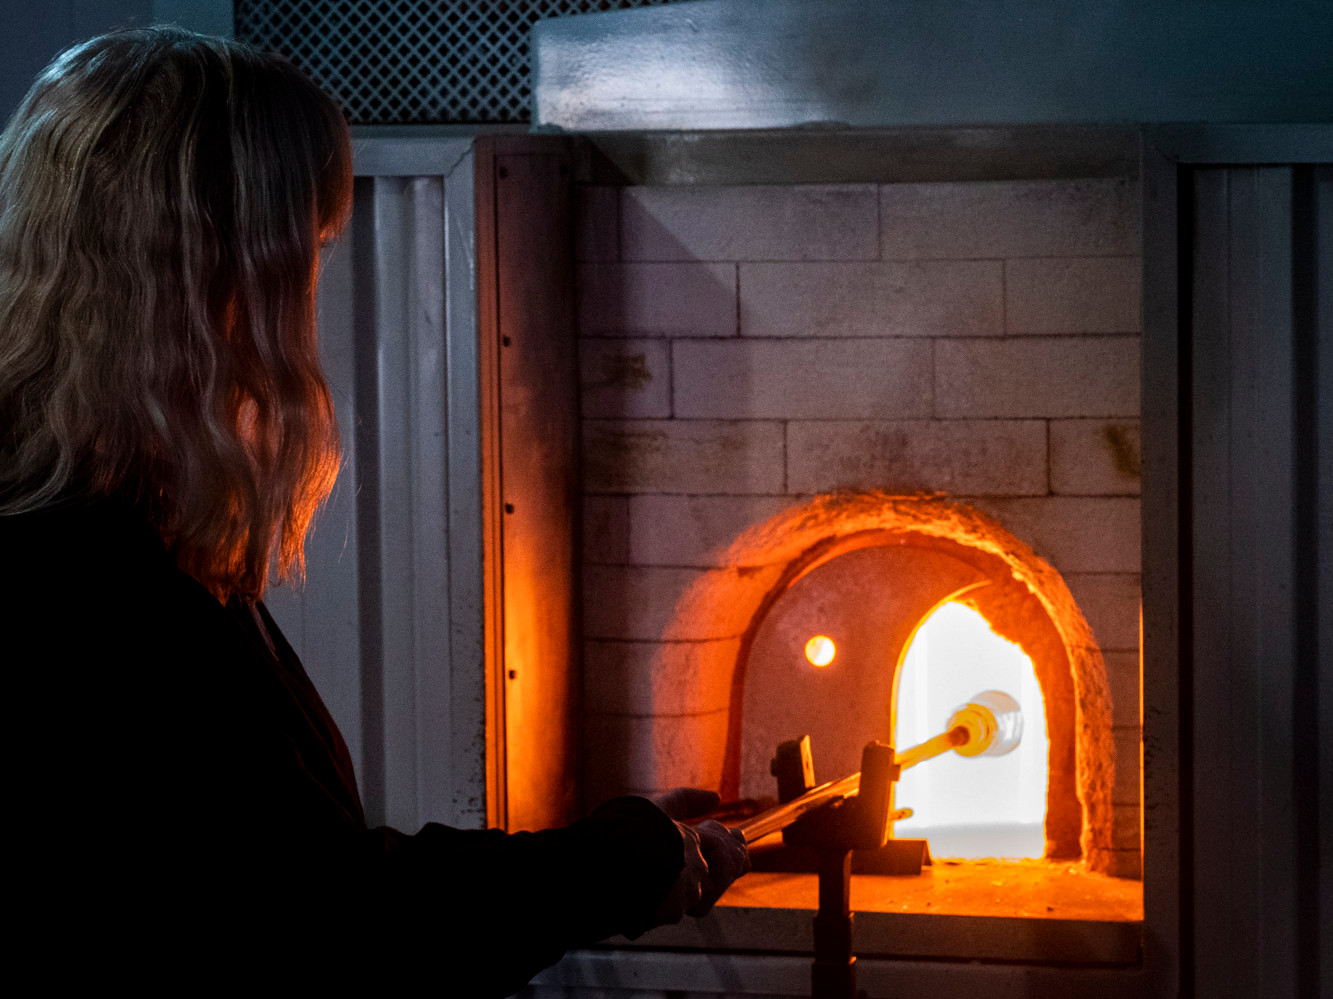 Fargefoto av en person med langt hår som varmer opp en pinne med glassmasse i en glødende varm ovn.